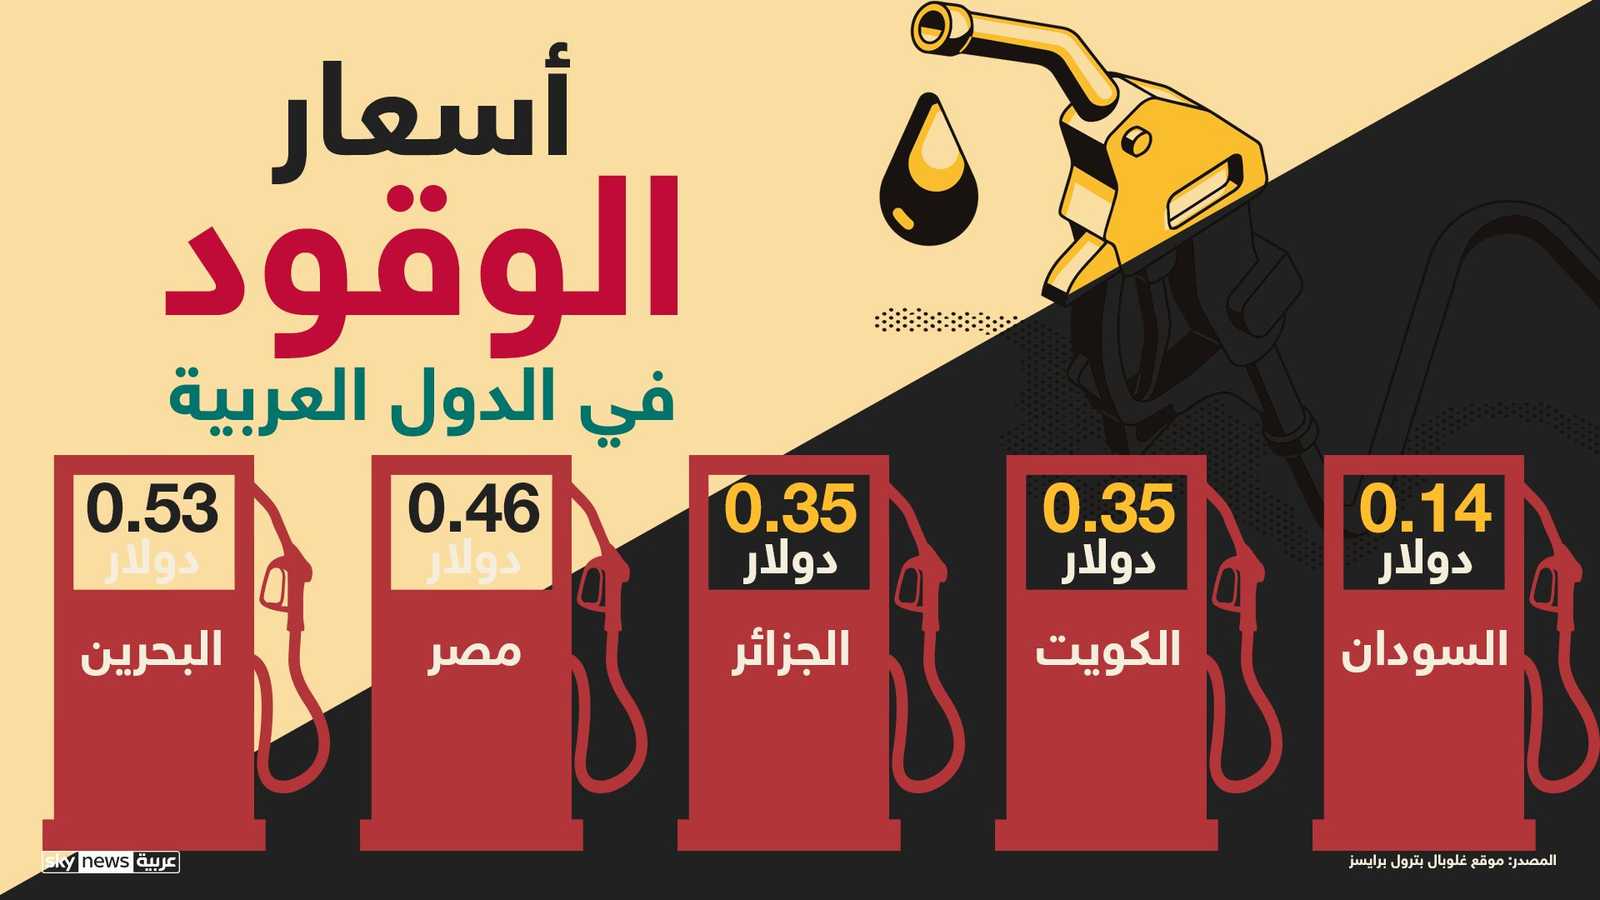 سعر البنزين في السودان يعد الأرخص عربيا